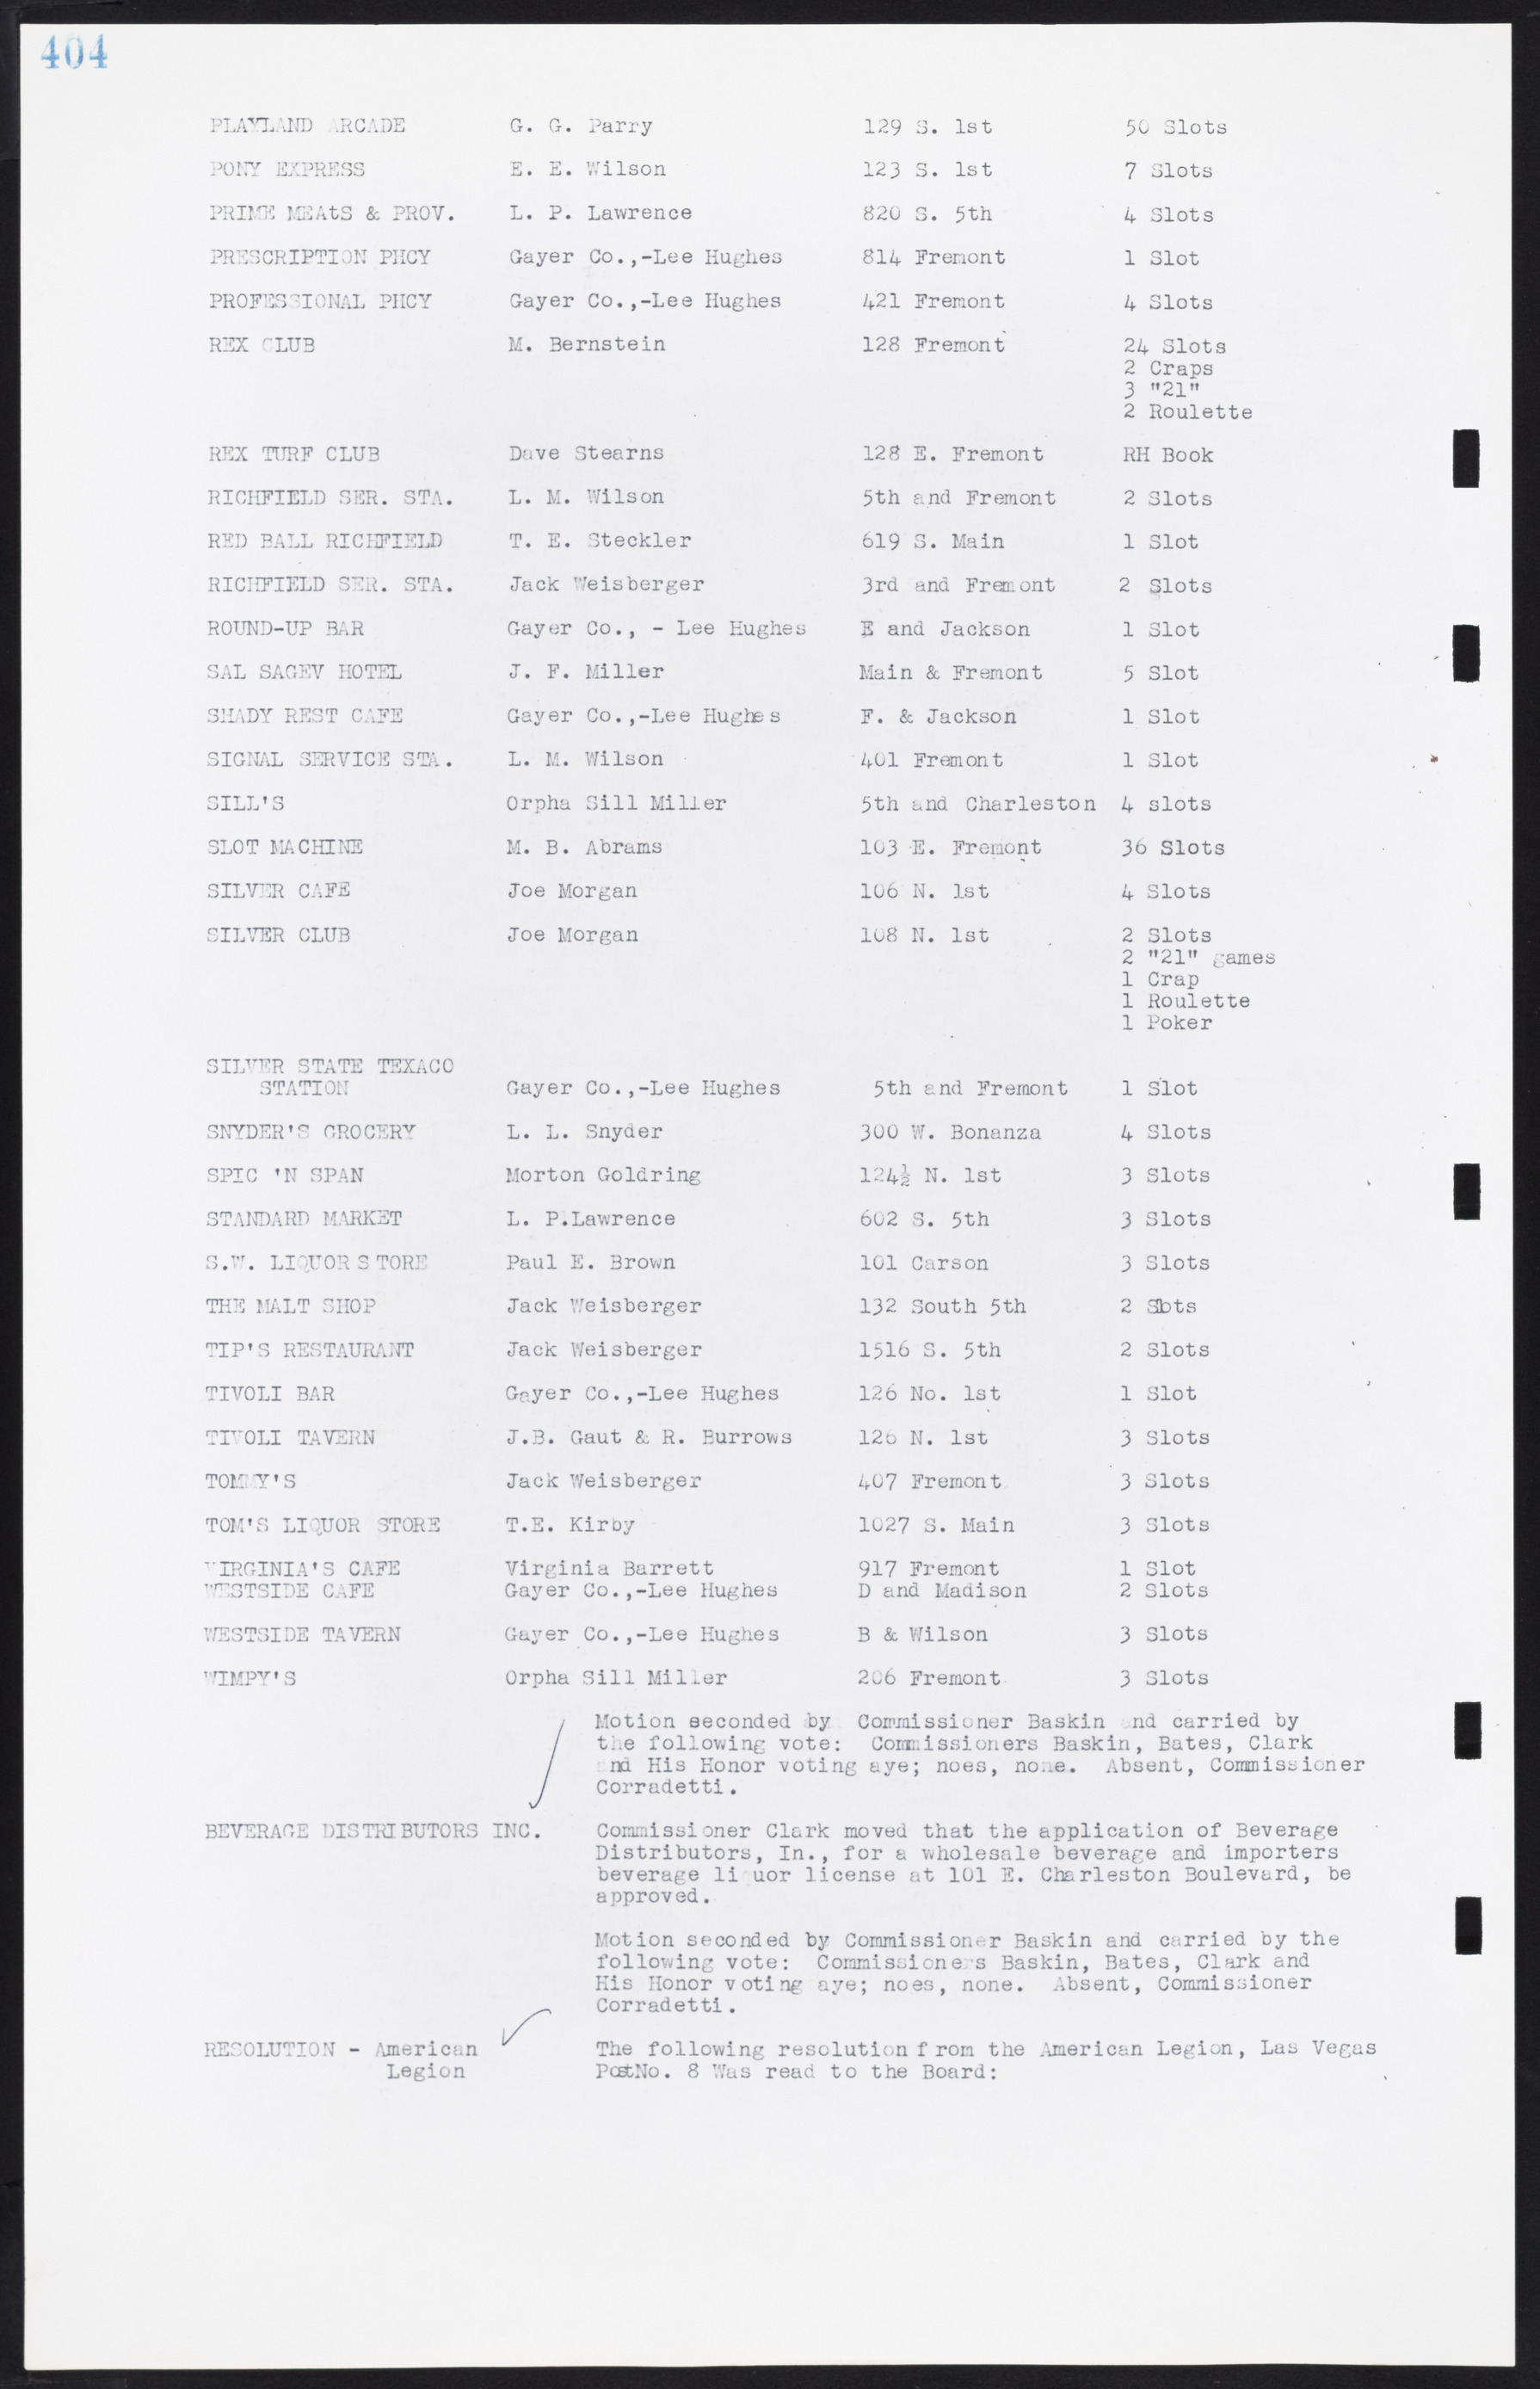 Las Vegas City Commission Minutes, August 11, 1942 to December 30, 1946, lvc000005-431